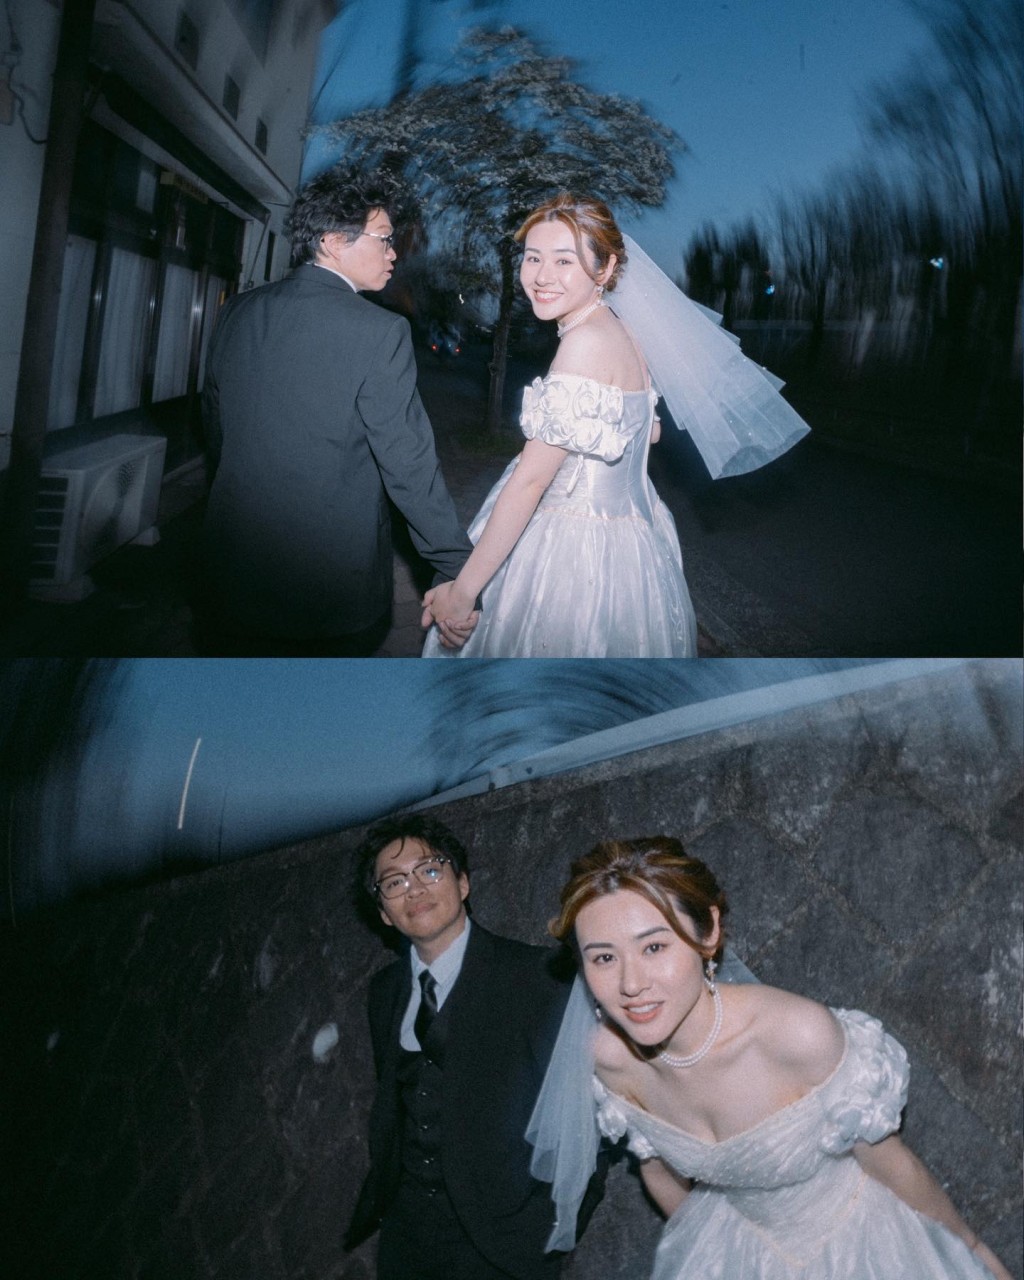 「崔建芒」与「唐诗劲」在外地拍婚照。